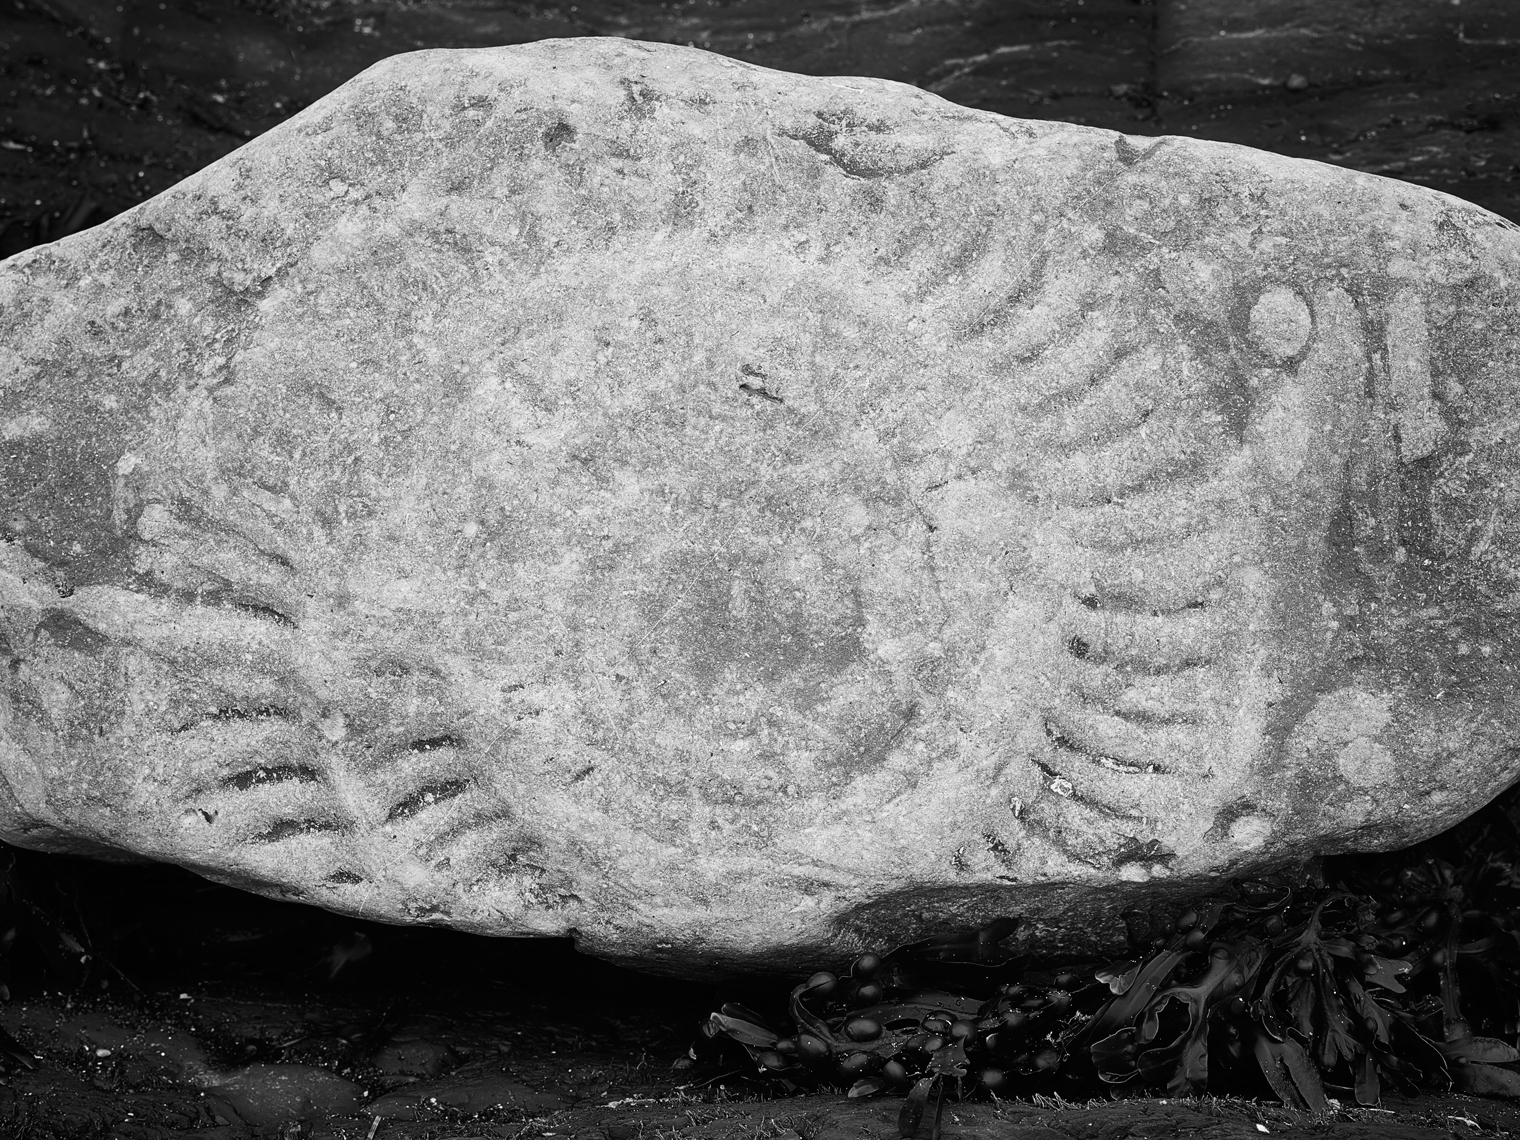 Jon Wyatt Photography - Ammonite fossil on Kilve beach in North Somerset